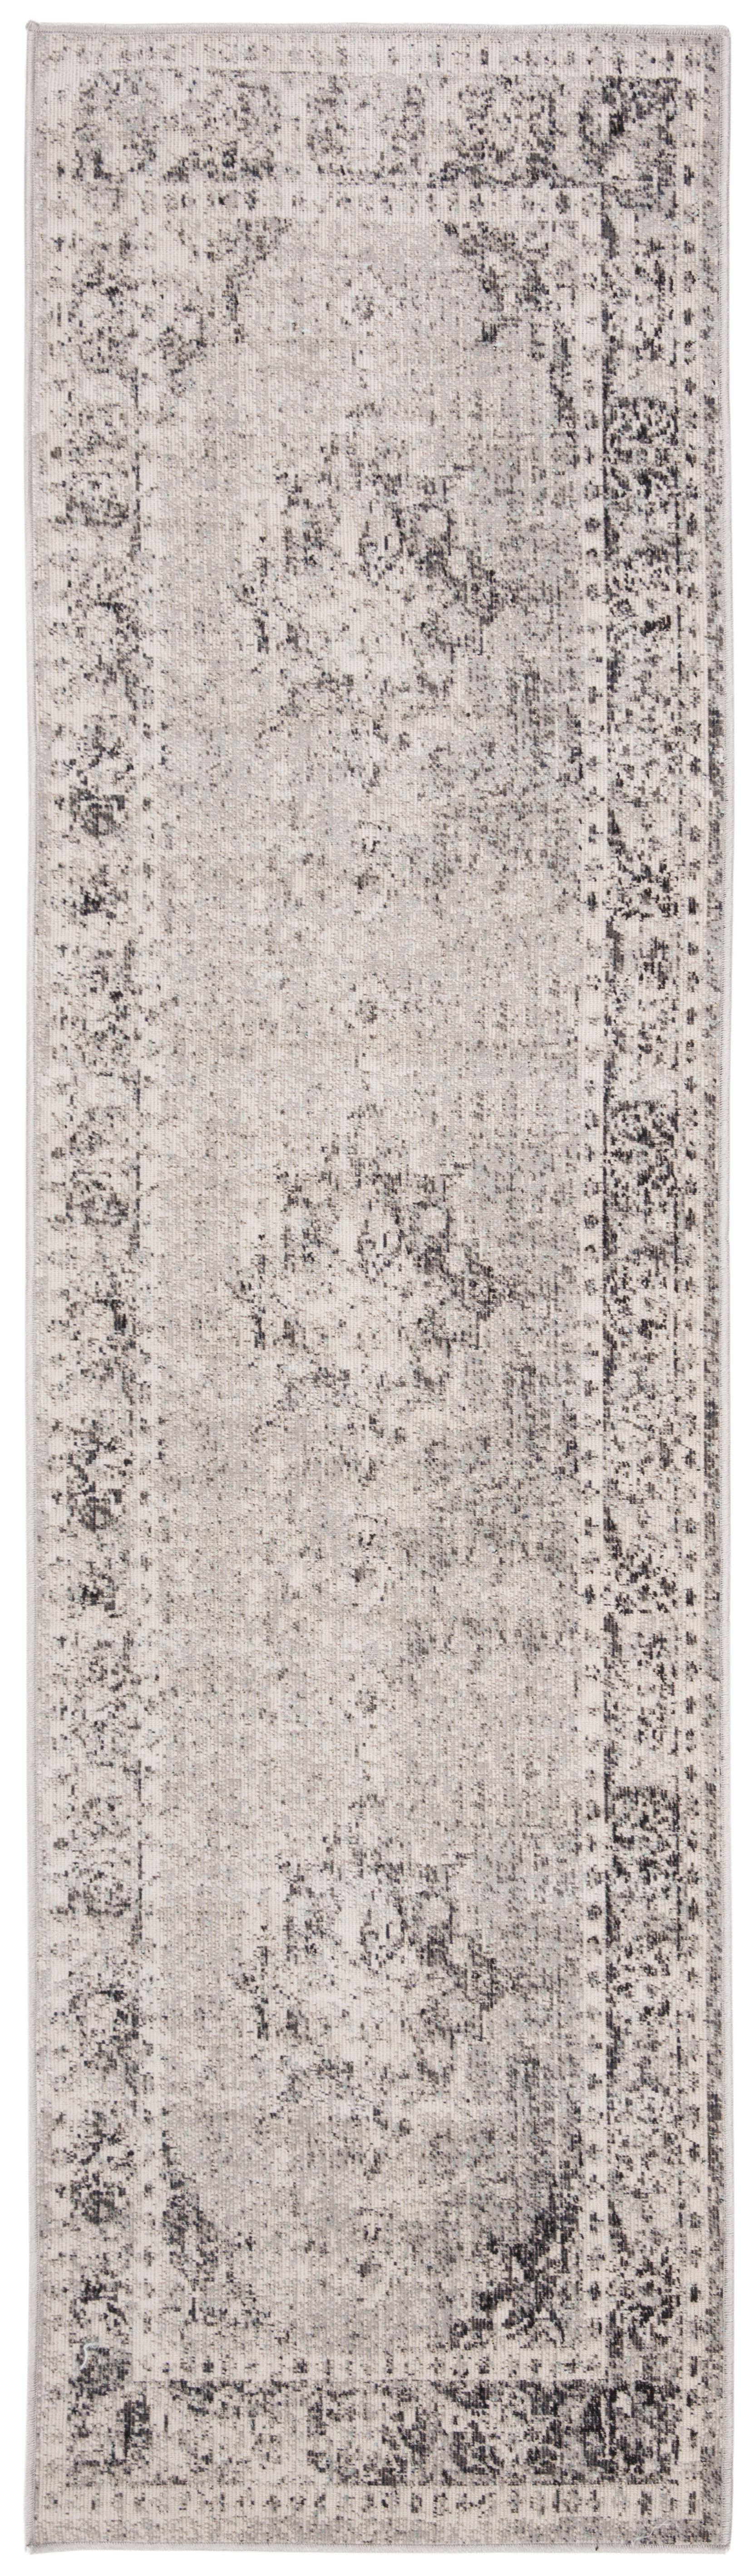 Tapis interieur / exterieur en gris & ivoire, 69 x 244 cm